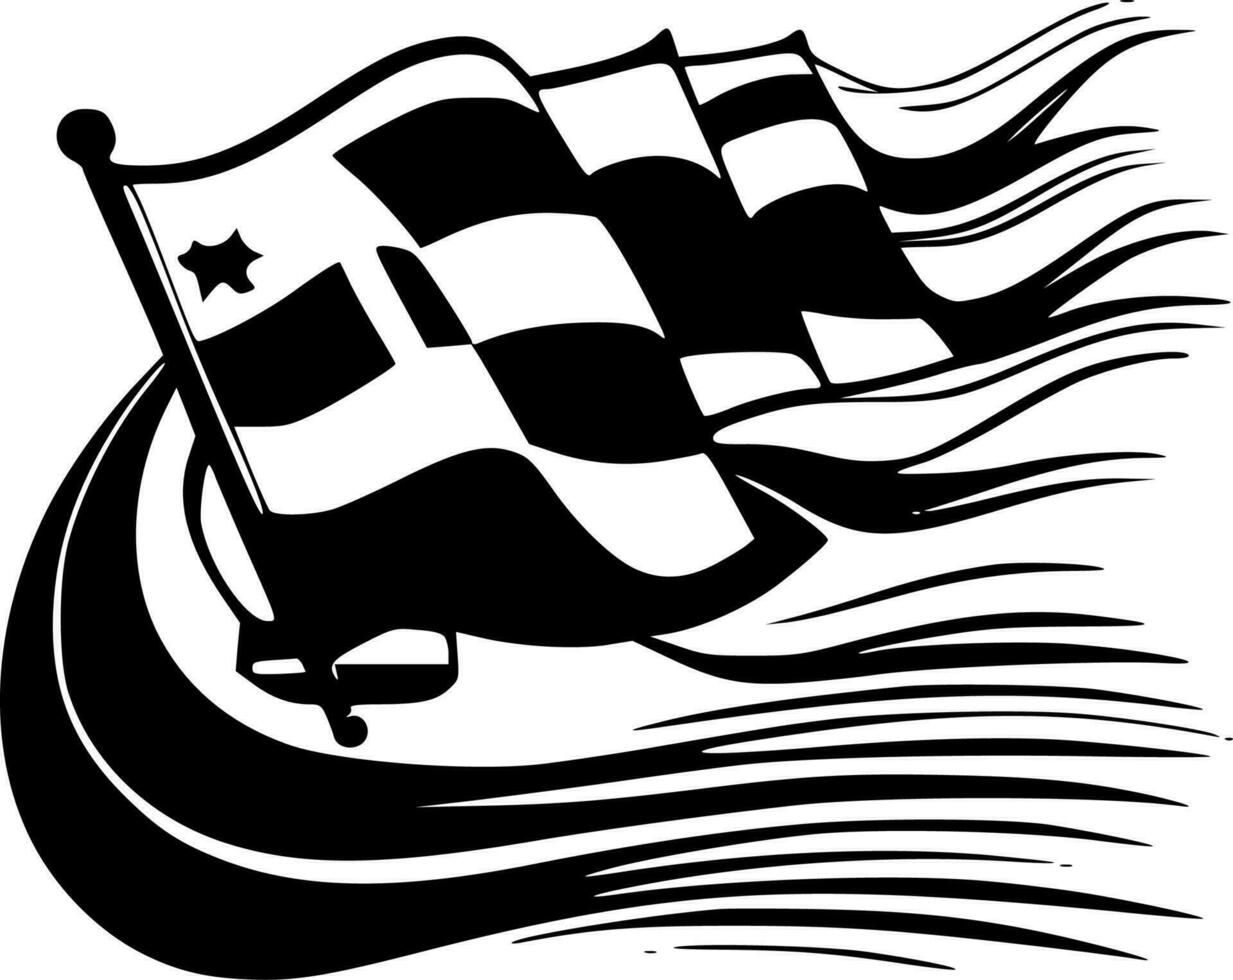 tävlings - svart och vit isolerat ikon - vektor illustration